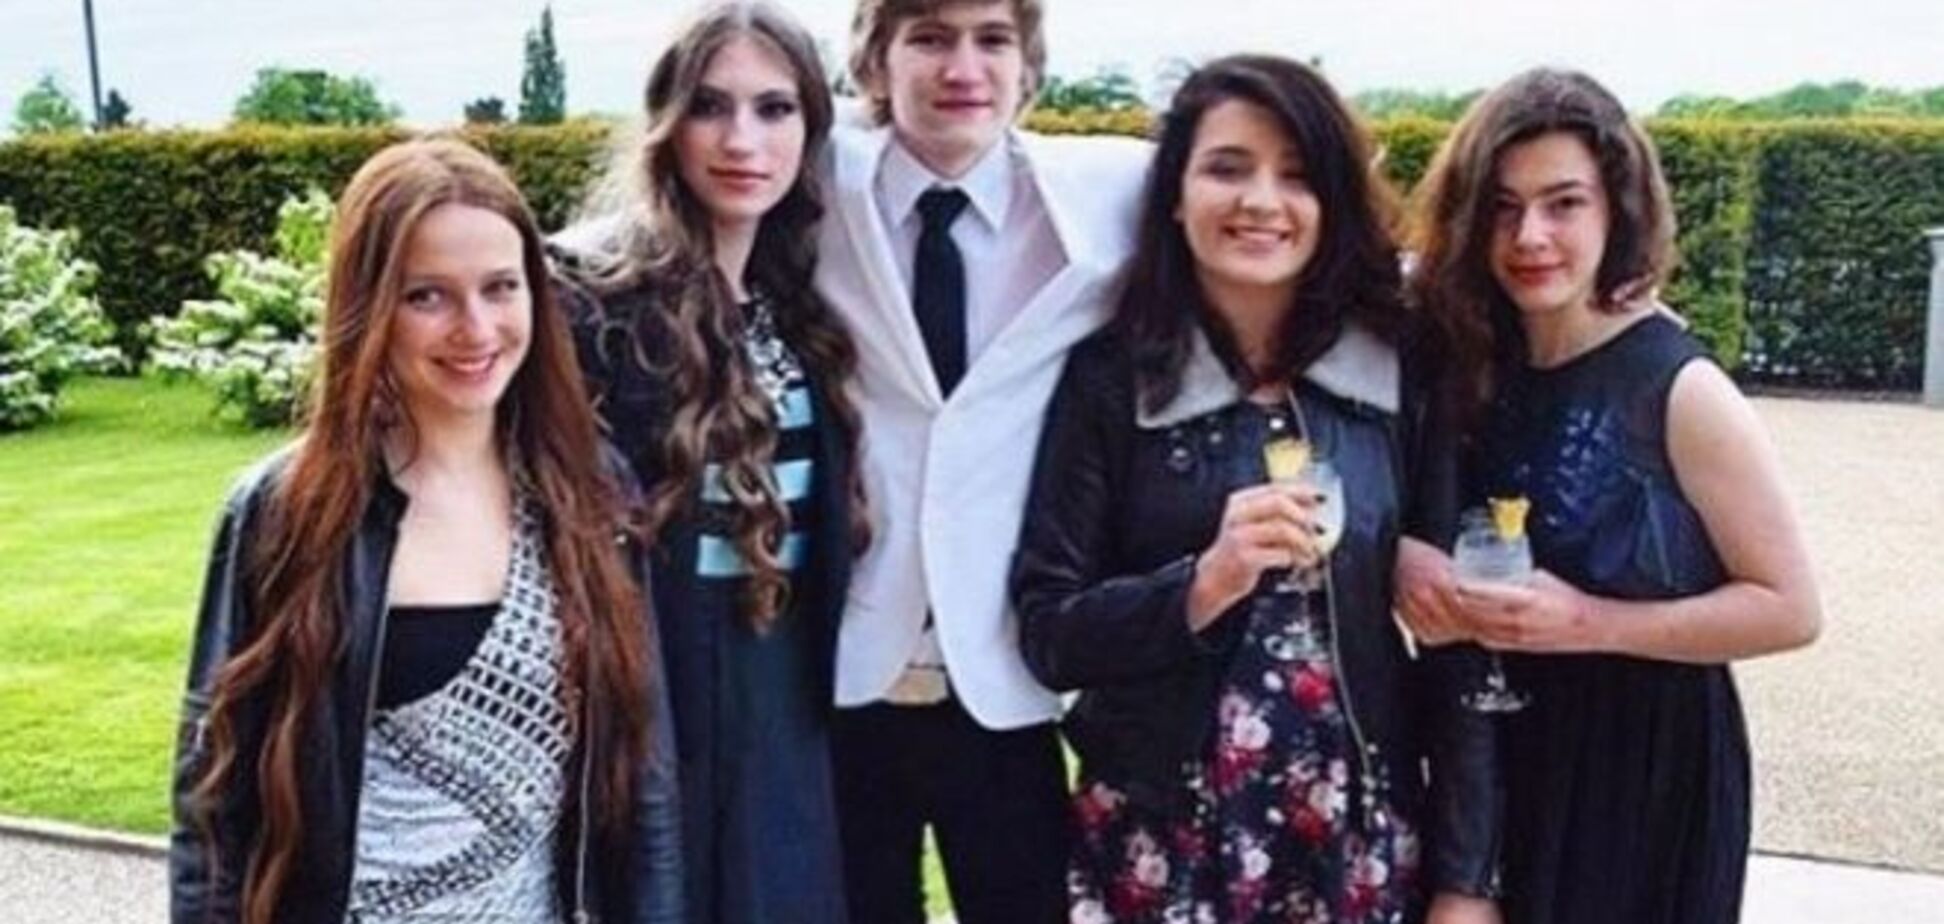 Дети Порошенко оттянулись на вечеринке в британском колледже: опубликованы фото